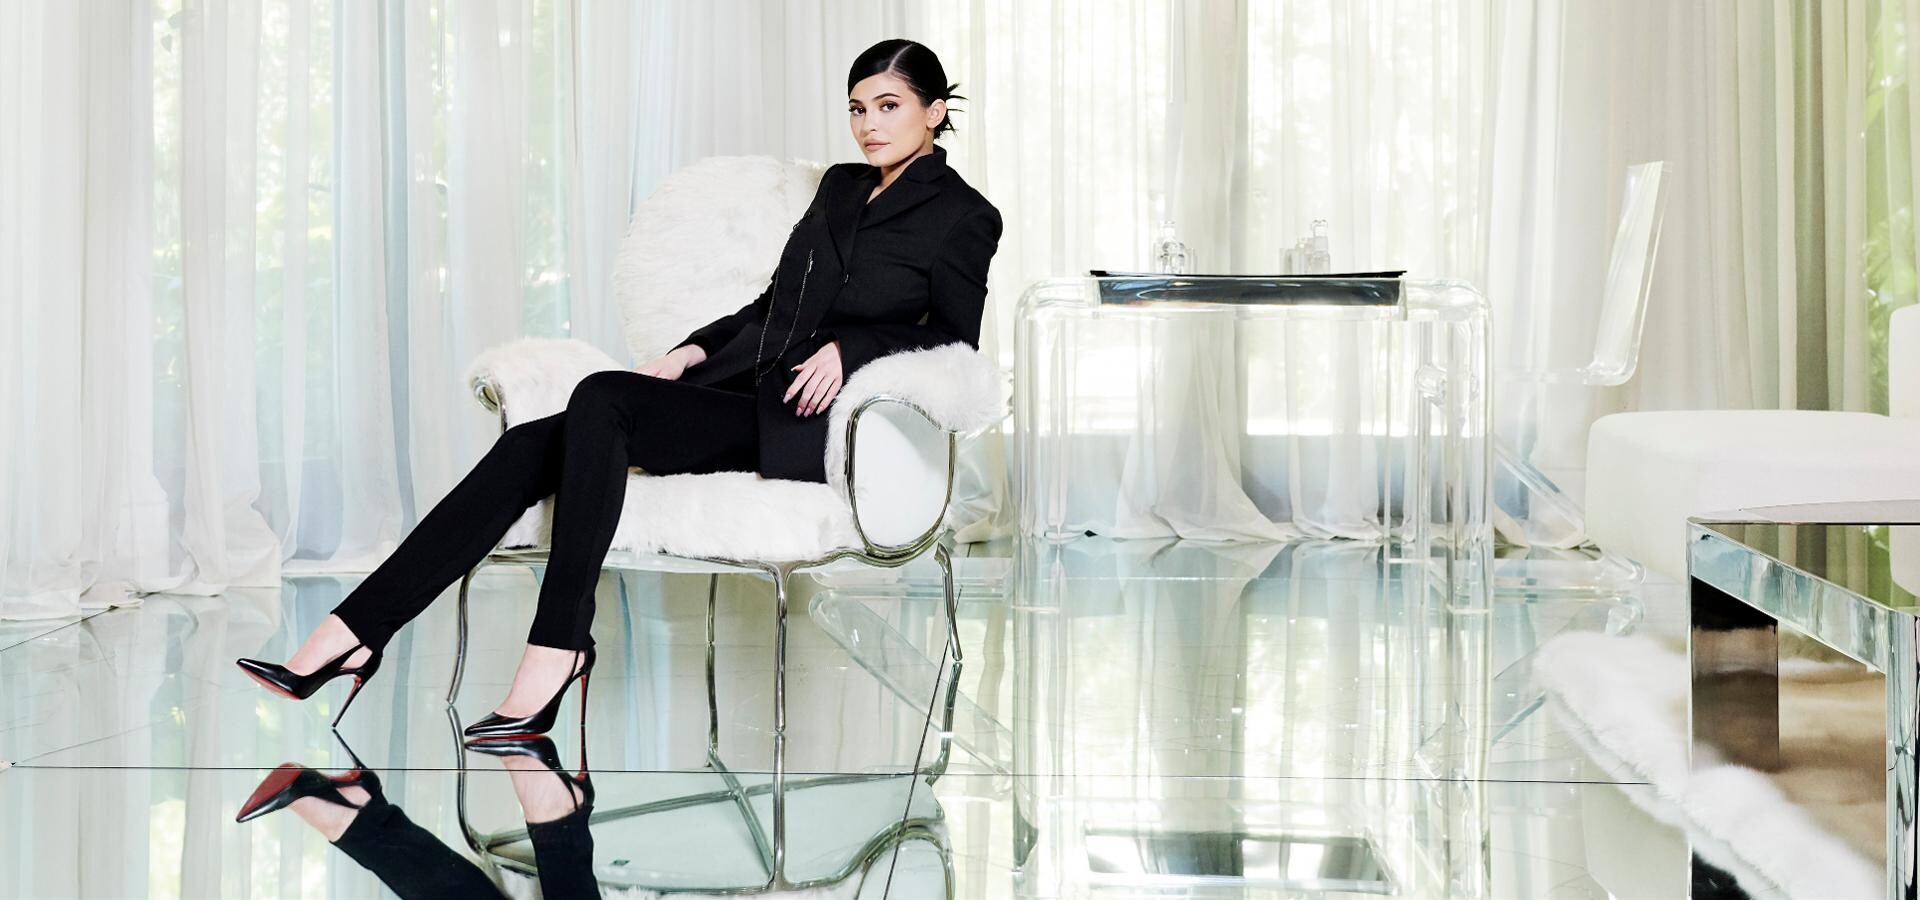 Nejmladší miliardářka světa Kylie Jenner spojí svou firmu s Coty. Za 600 milionů dolarů